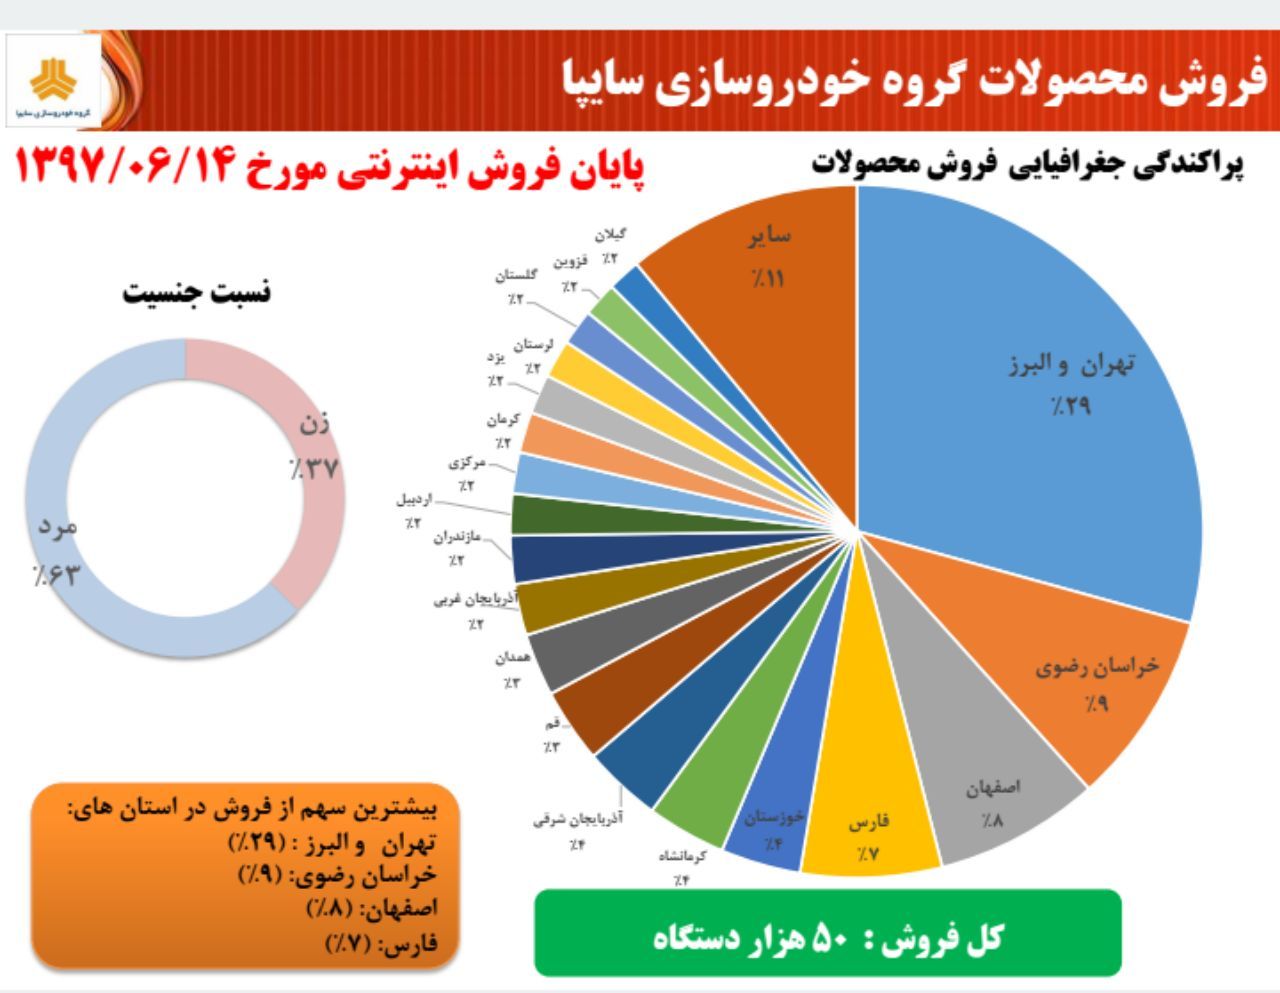 بیشترین خرید از استان های تهران و البرز انجام شد